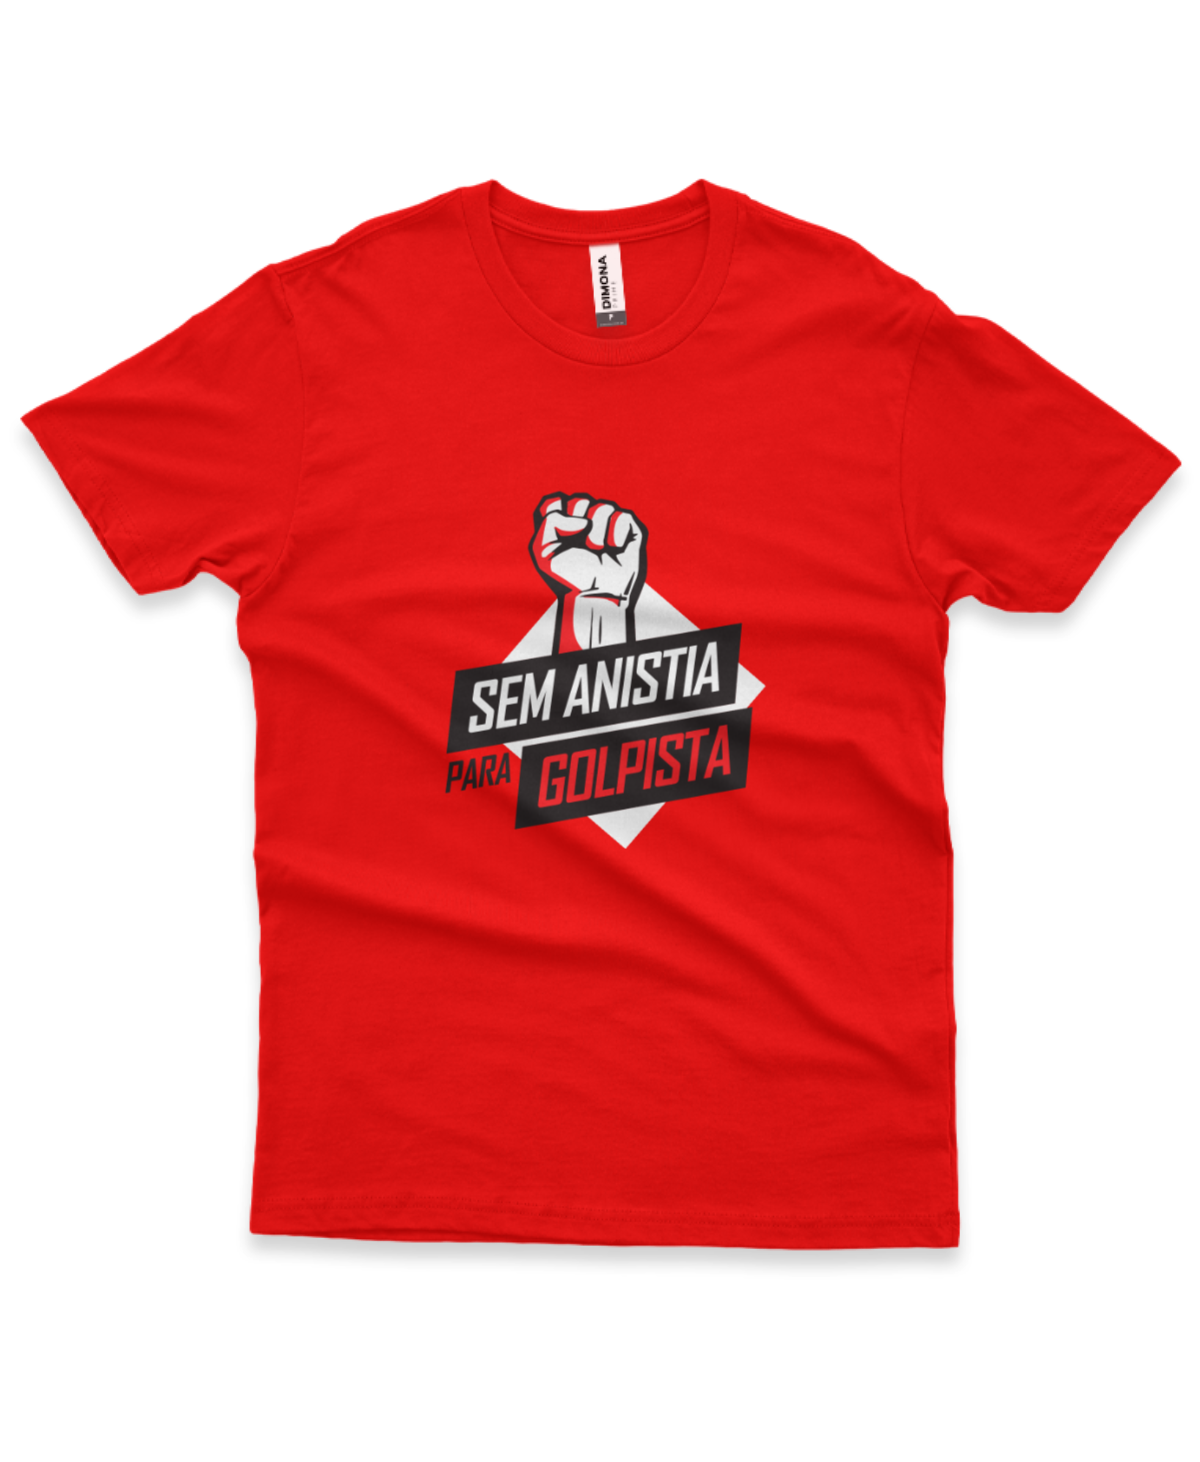 camiseta masculina cor vermelha com ilustração da mão fechada em punho como forma de protesto e a frase "sem anistia para golpista"